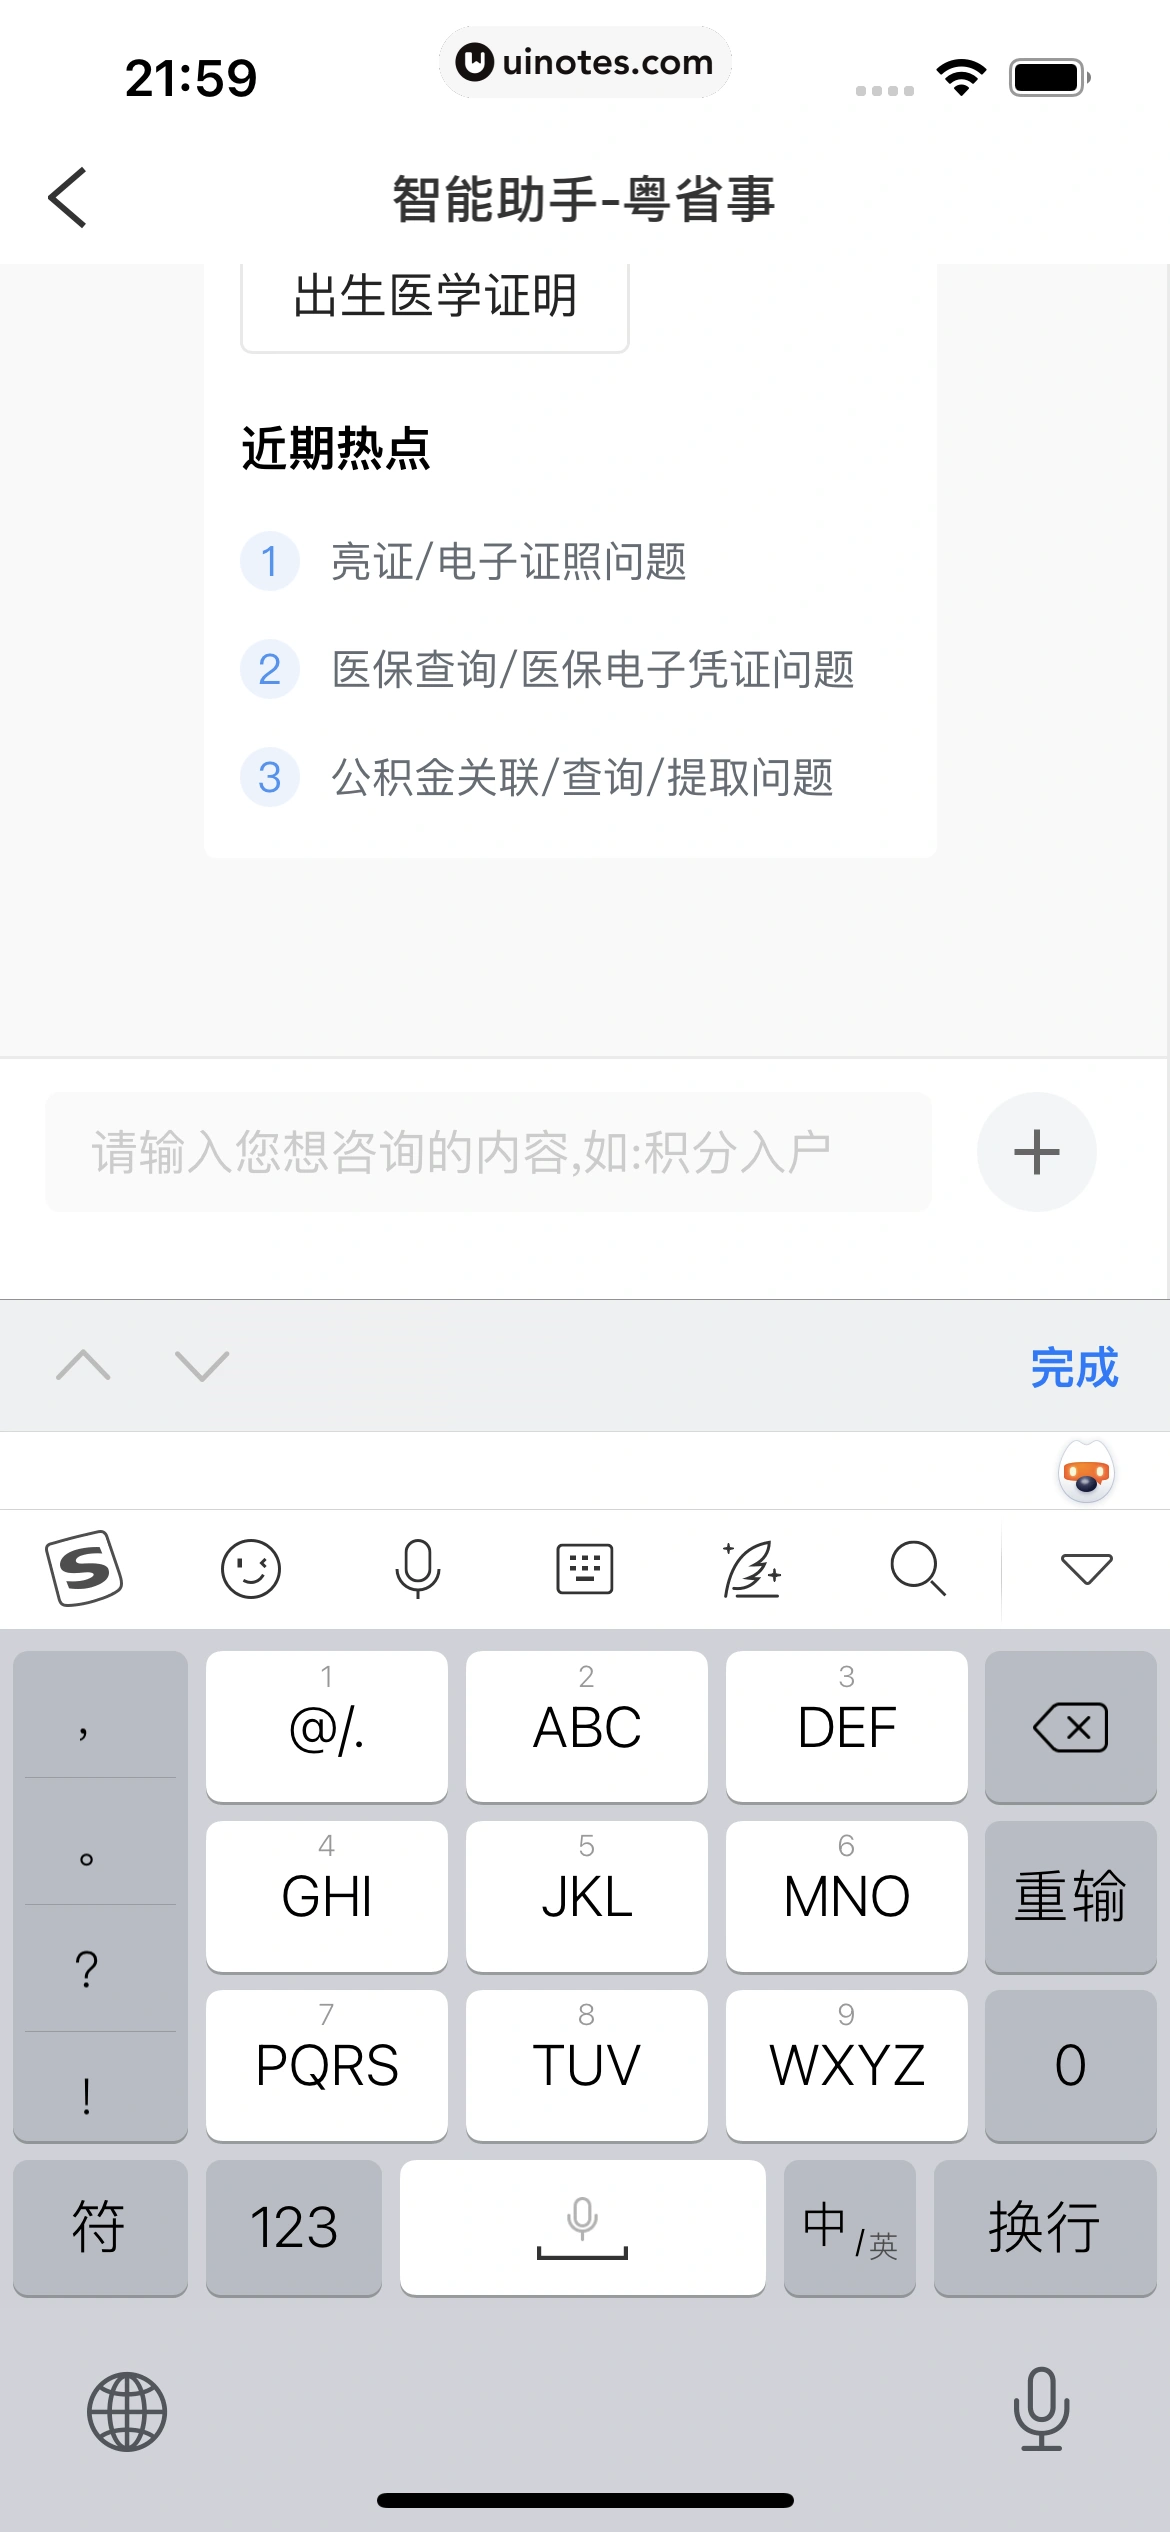 粤省事 App 截图 132 - UI Notes